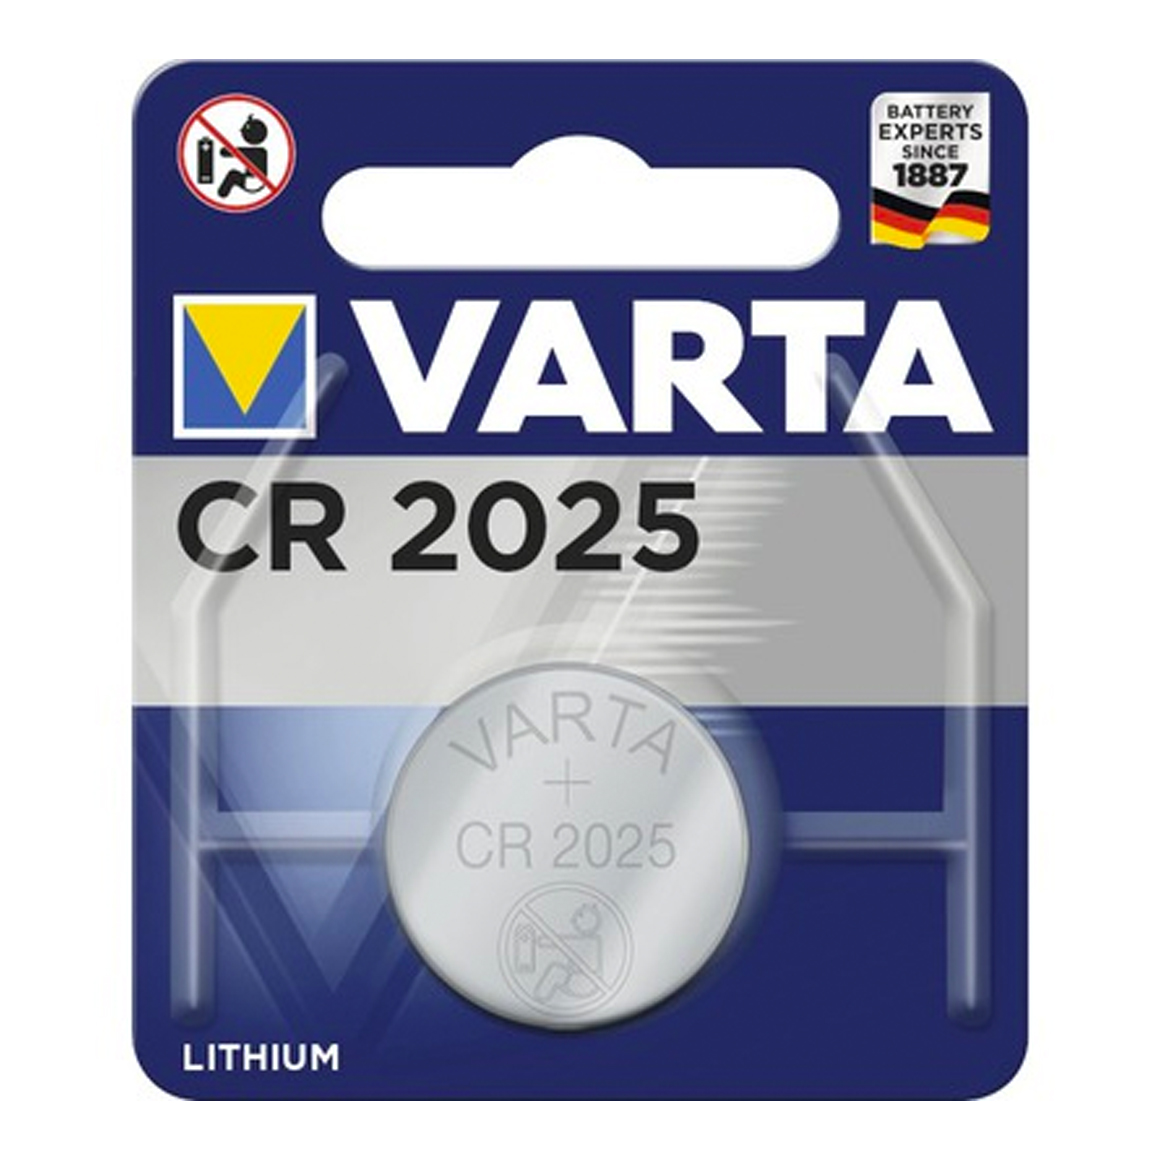 Varta CR2025 3V Lithium knoopcel batterij